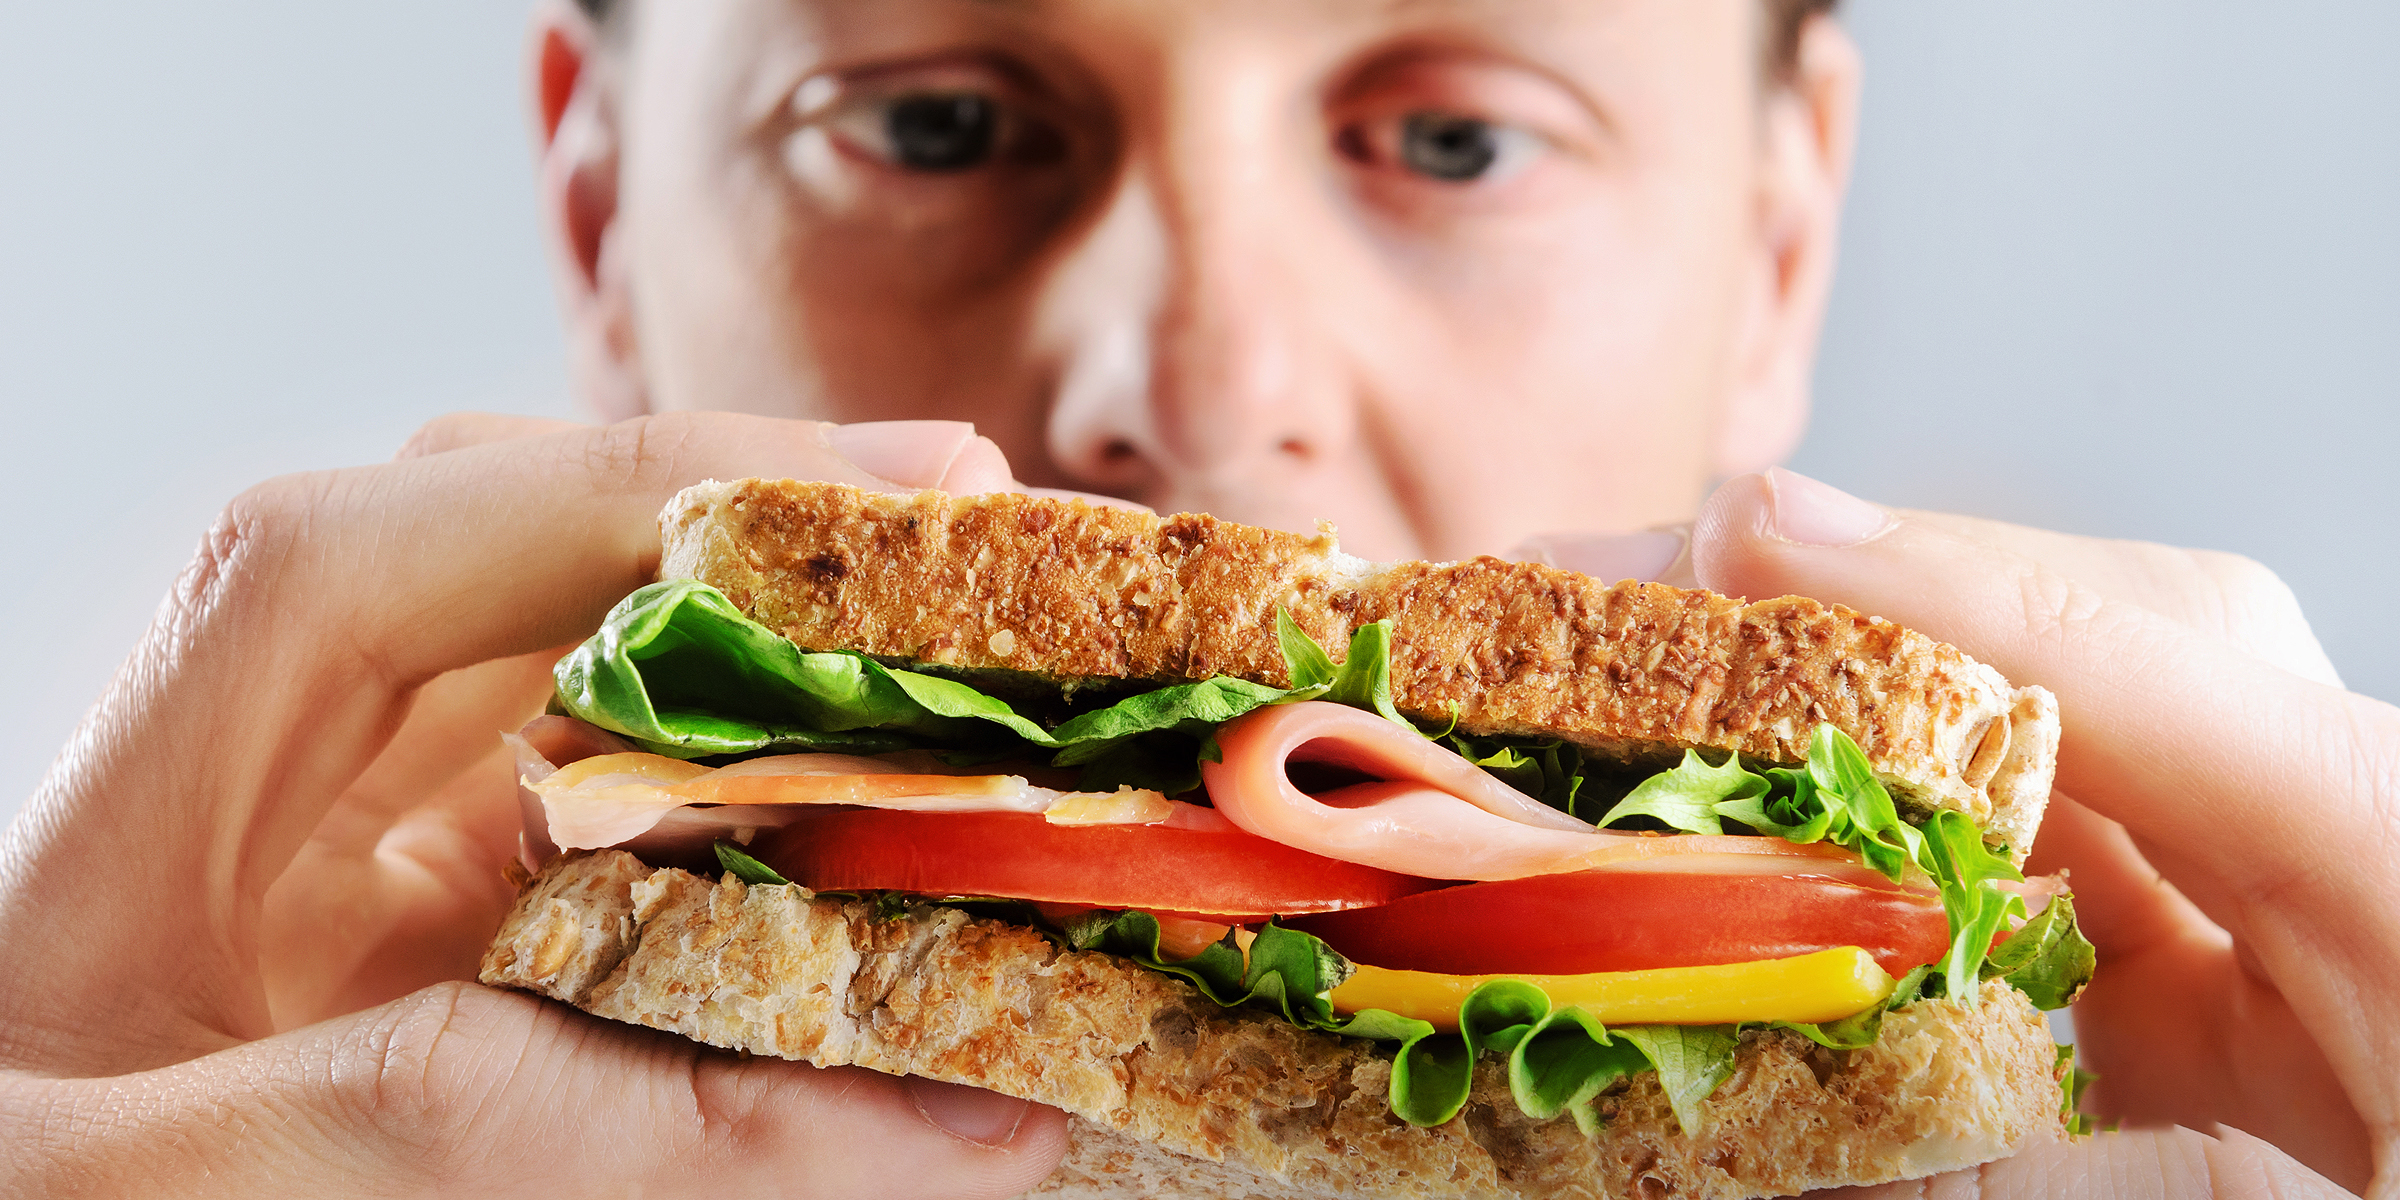 Un hombre mirando un sándwich | Fuente: Shutterstock